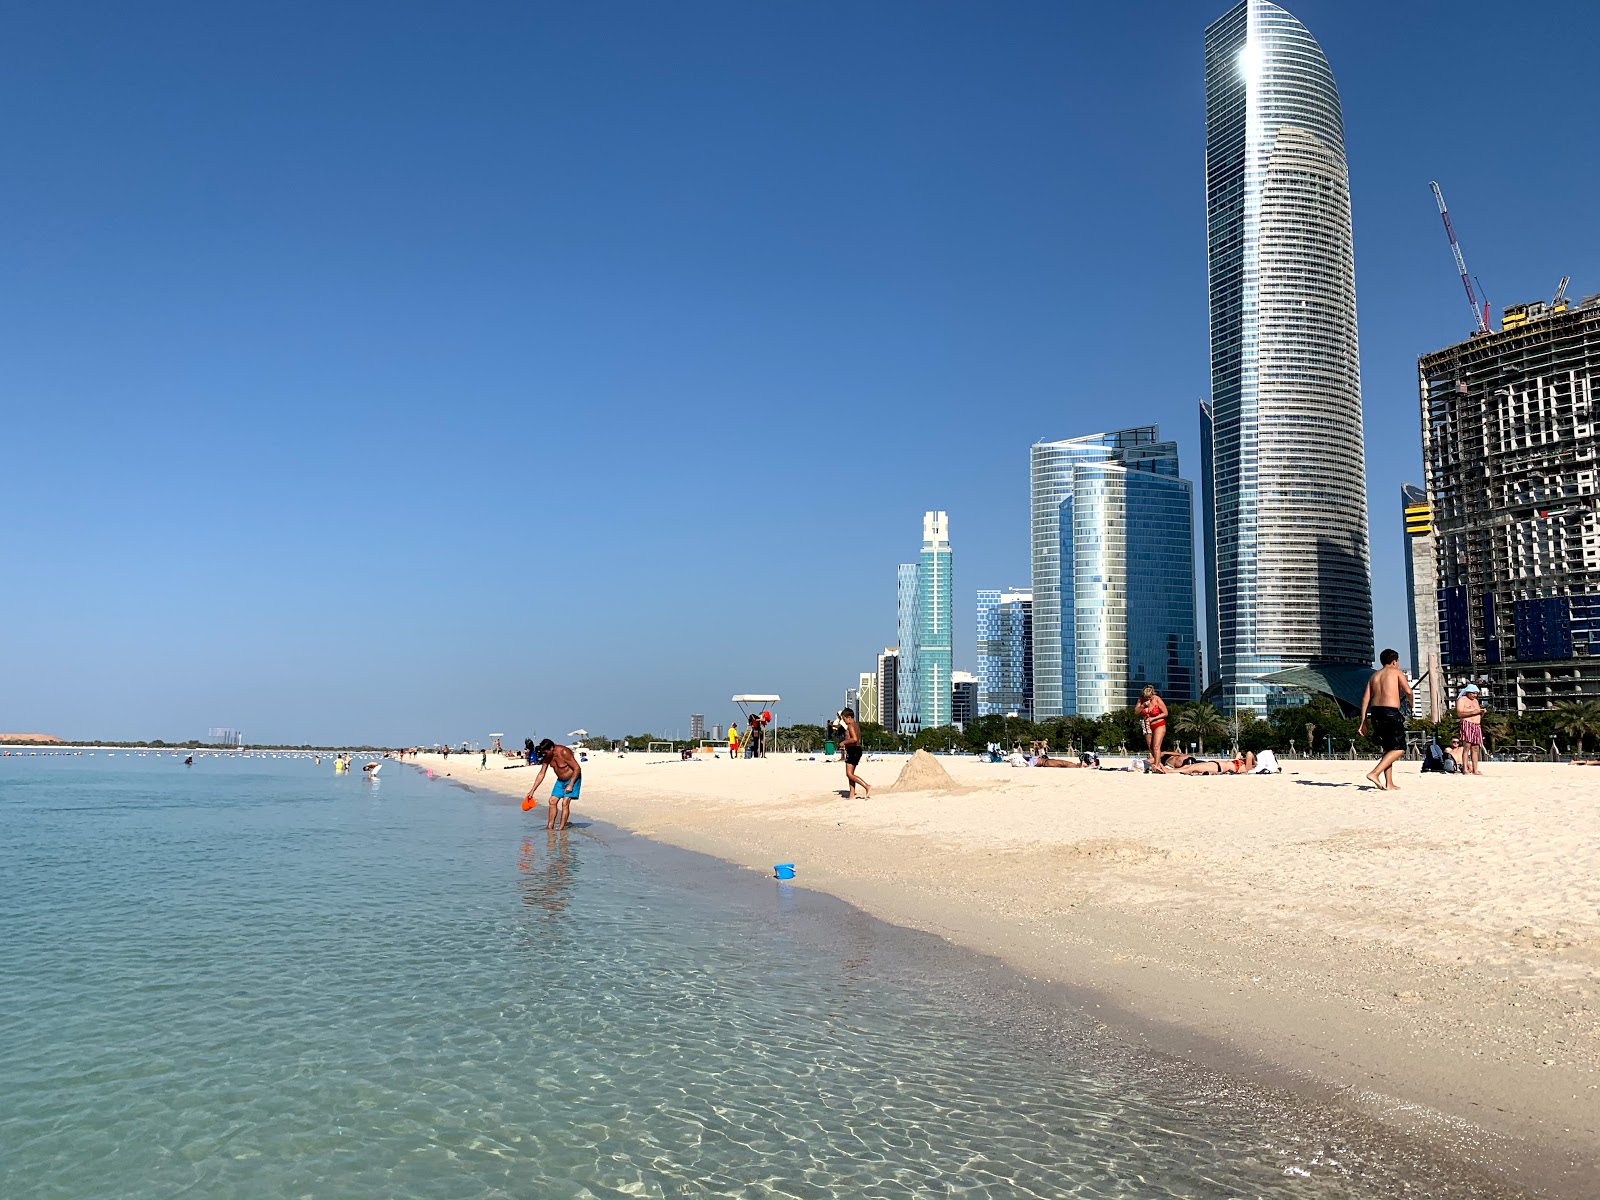 Fotografie cu Abu Dhabi beach cu o suprafață de nisip fin alb